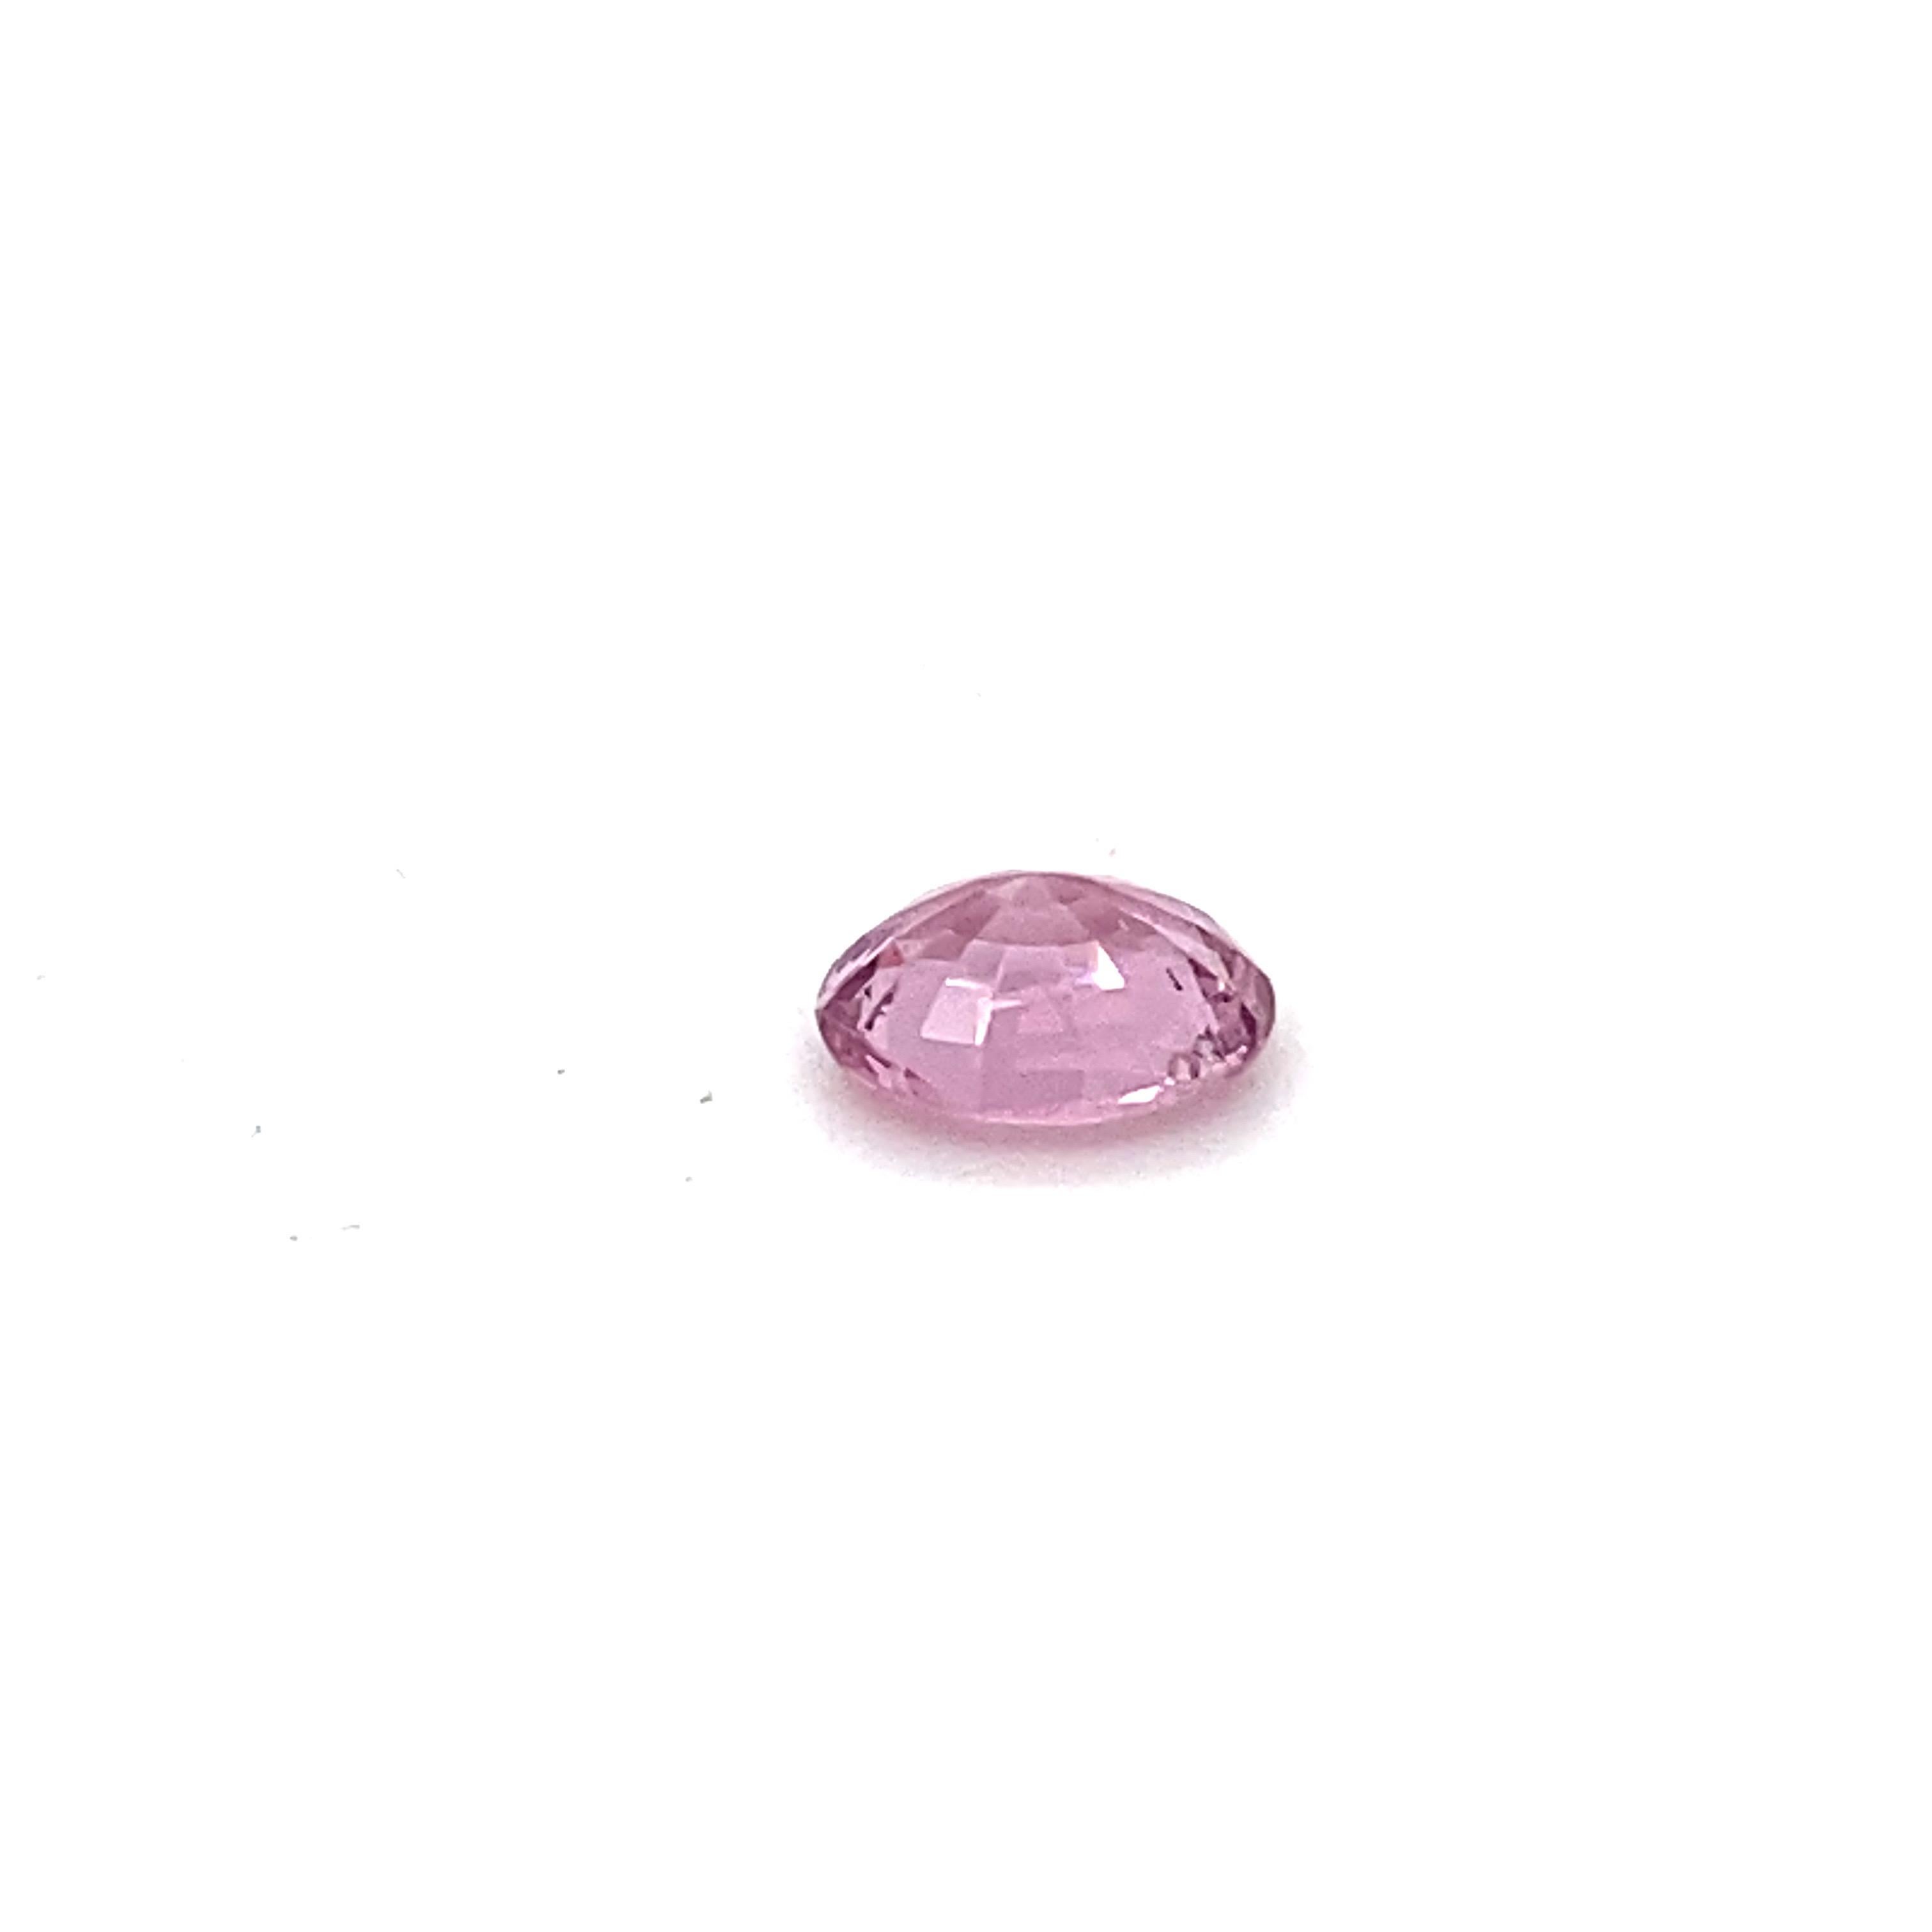 2.0 Carat Oval Shape Natural Pink Spinel Loose Gemstone For Sale 7